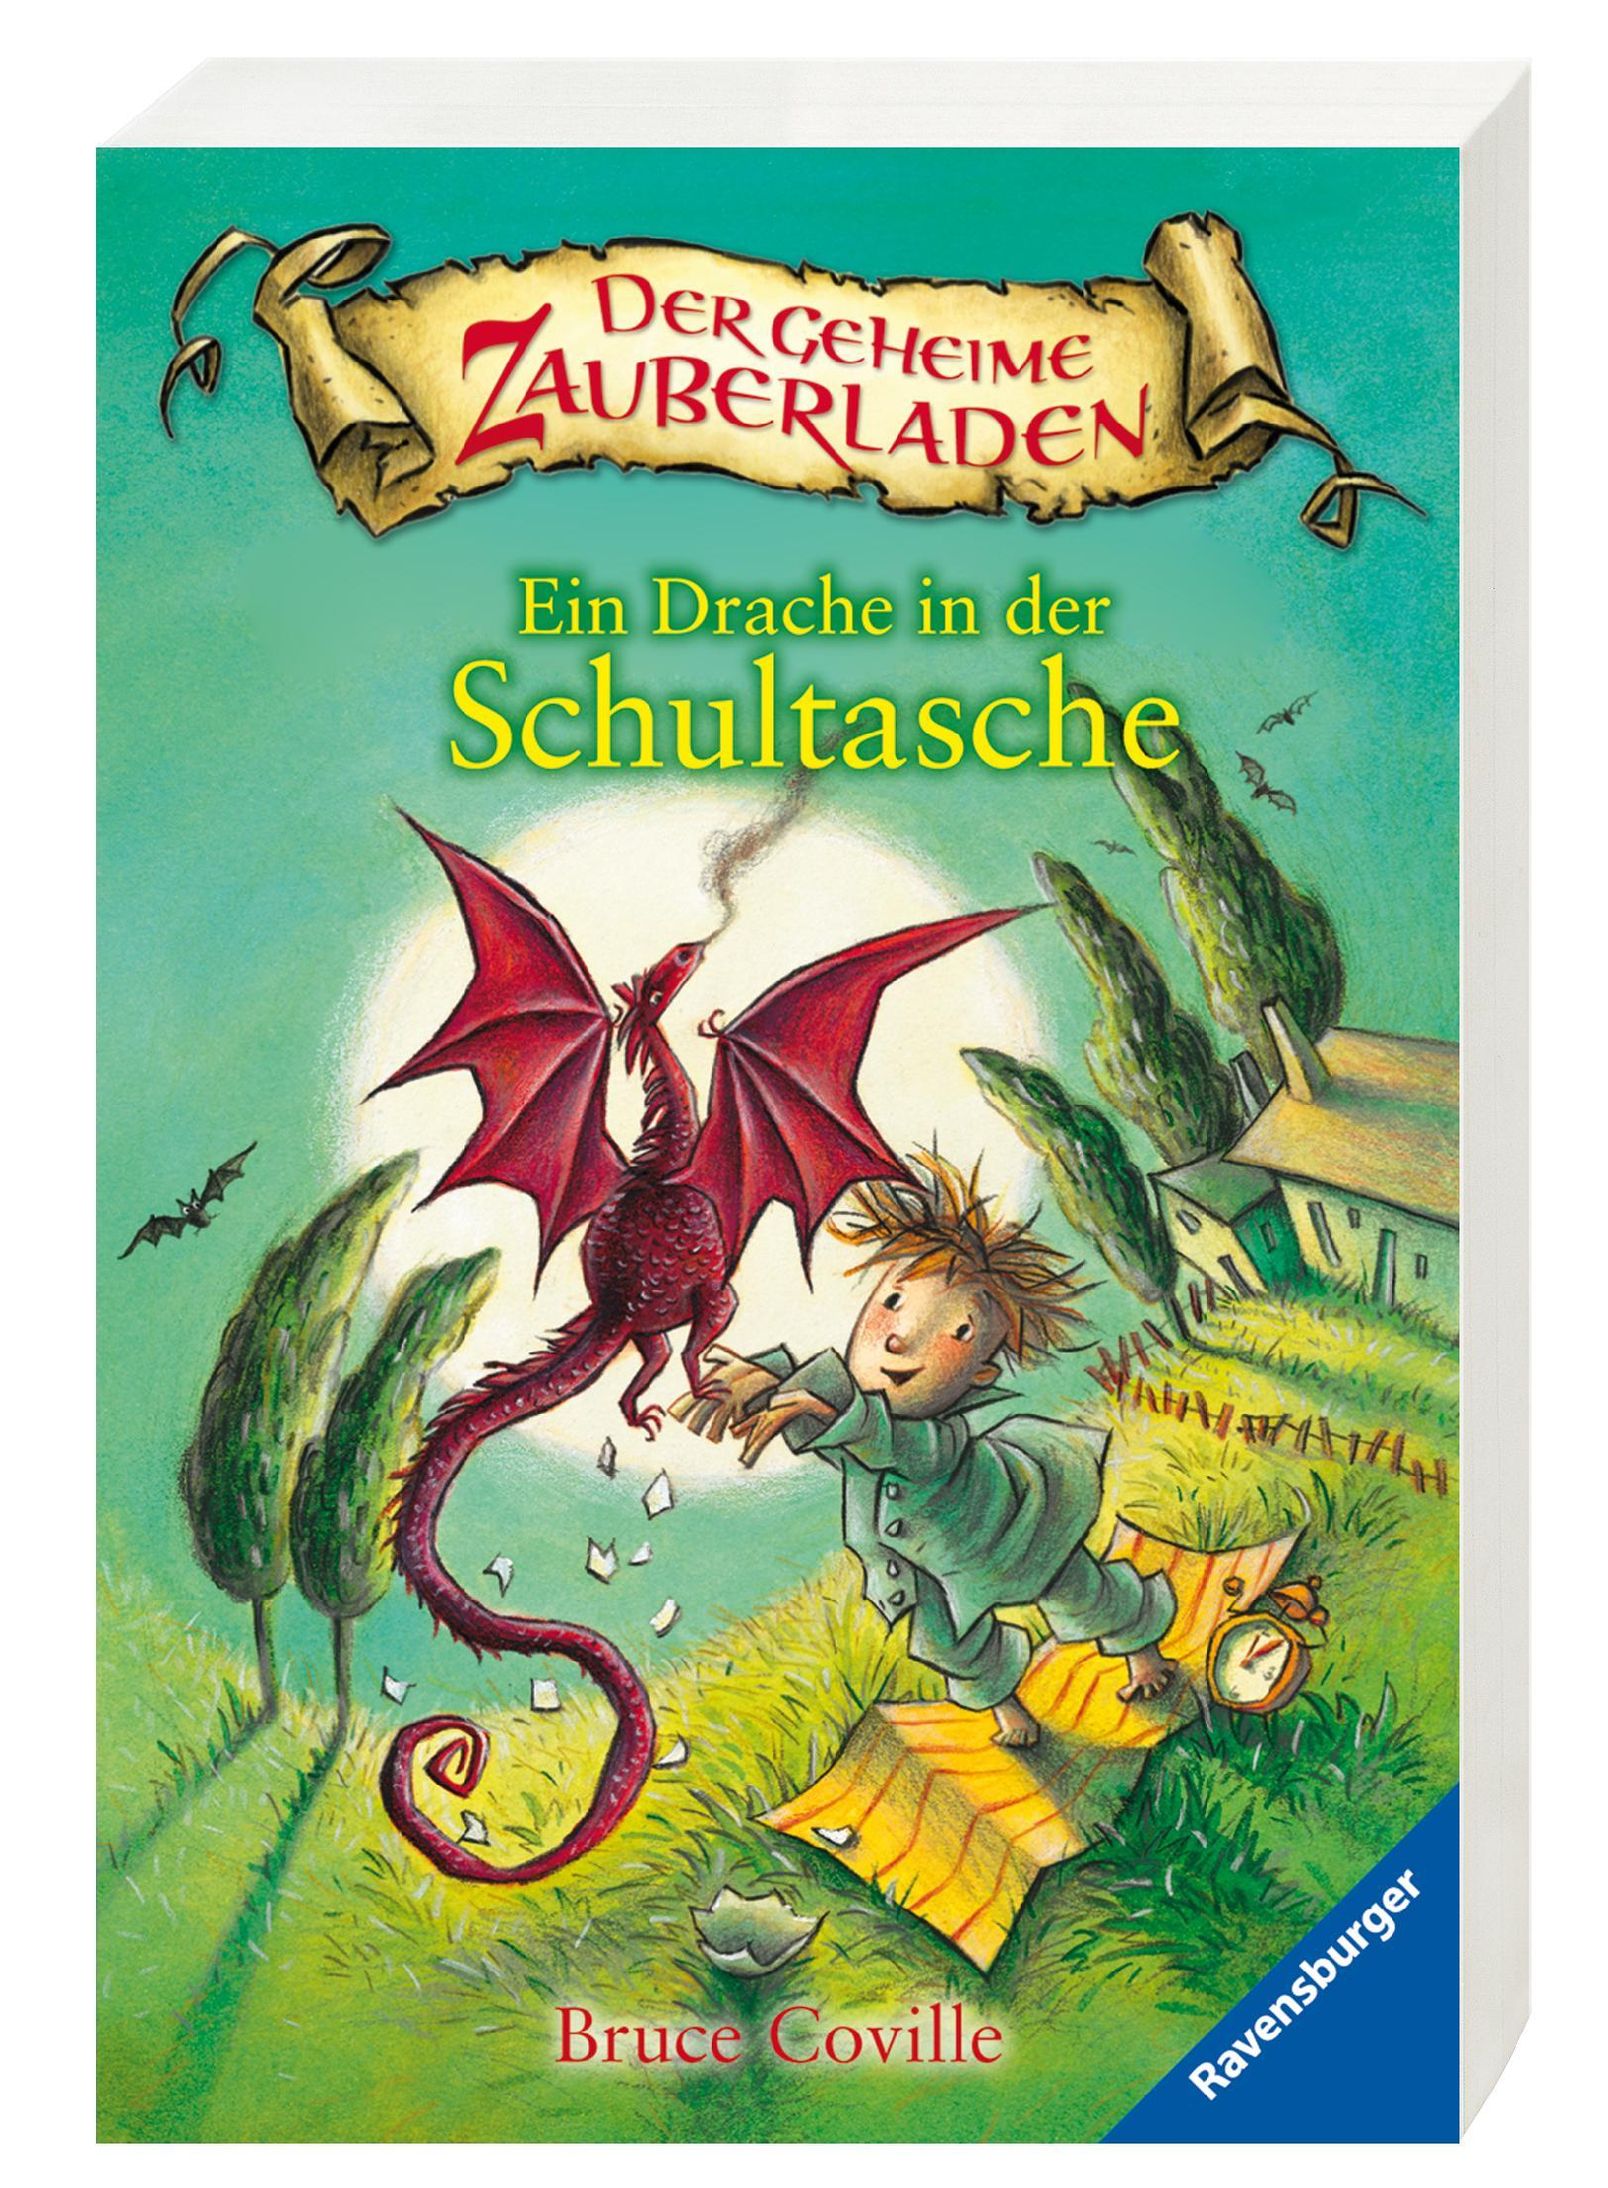 Ein Drache in der Schultasche Der geheime Zauberladen Bd.1 Buch